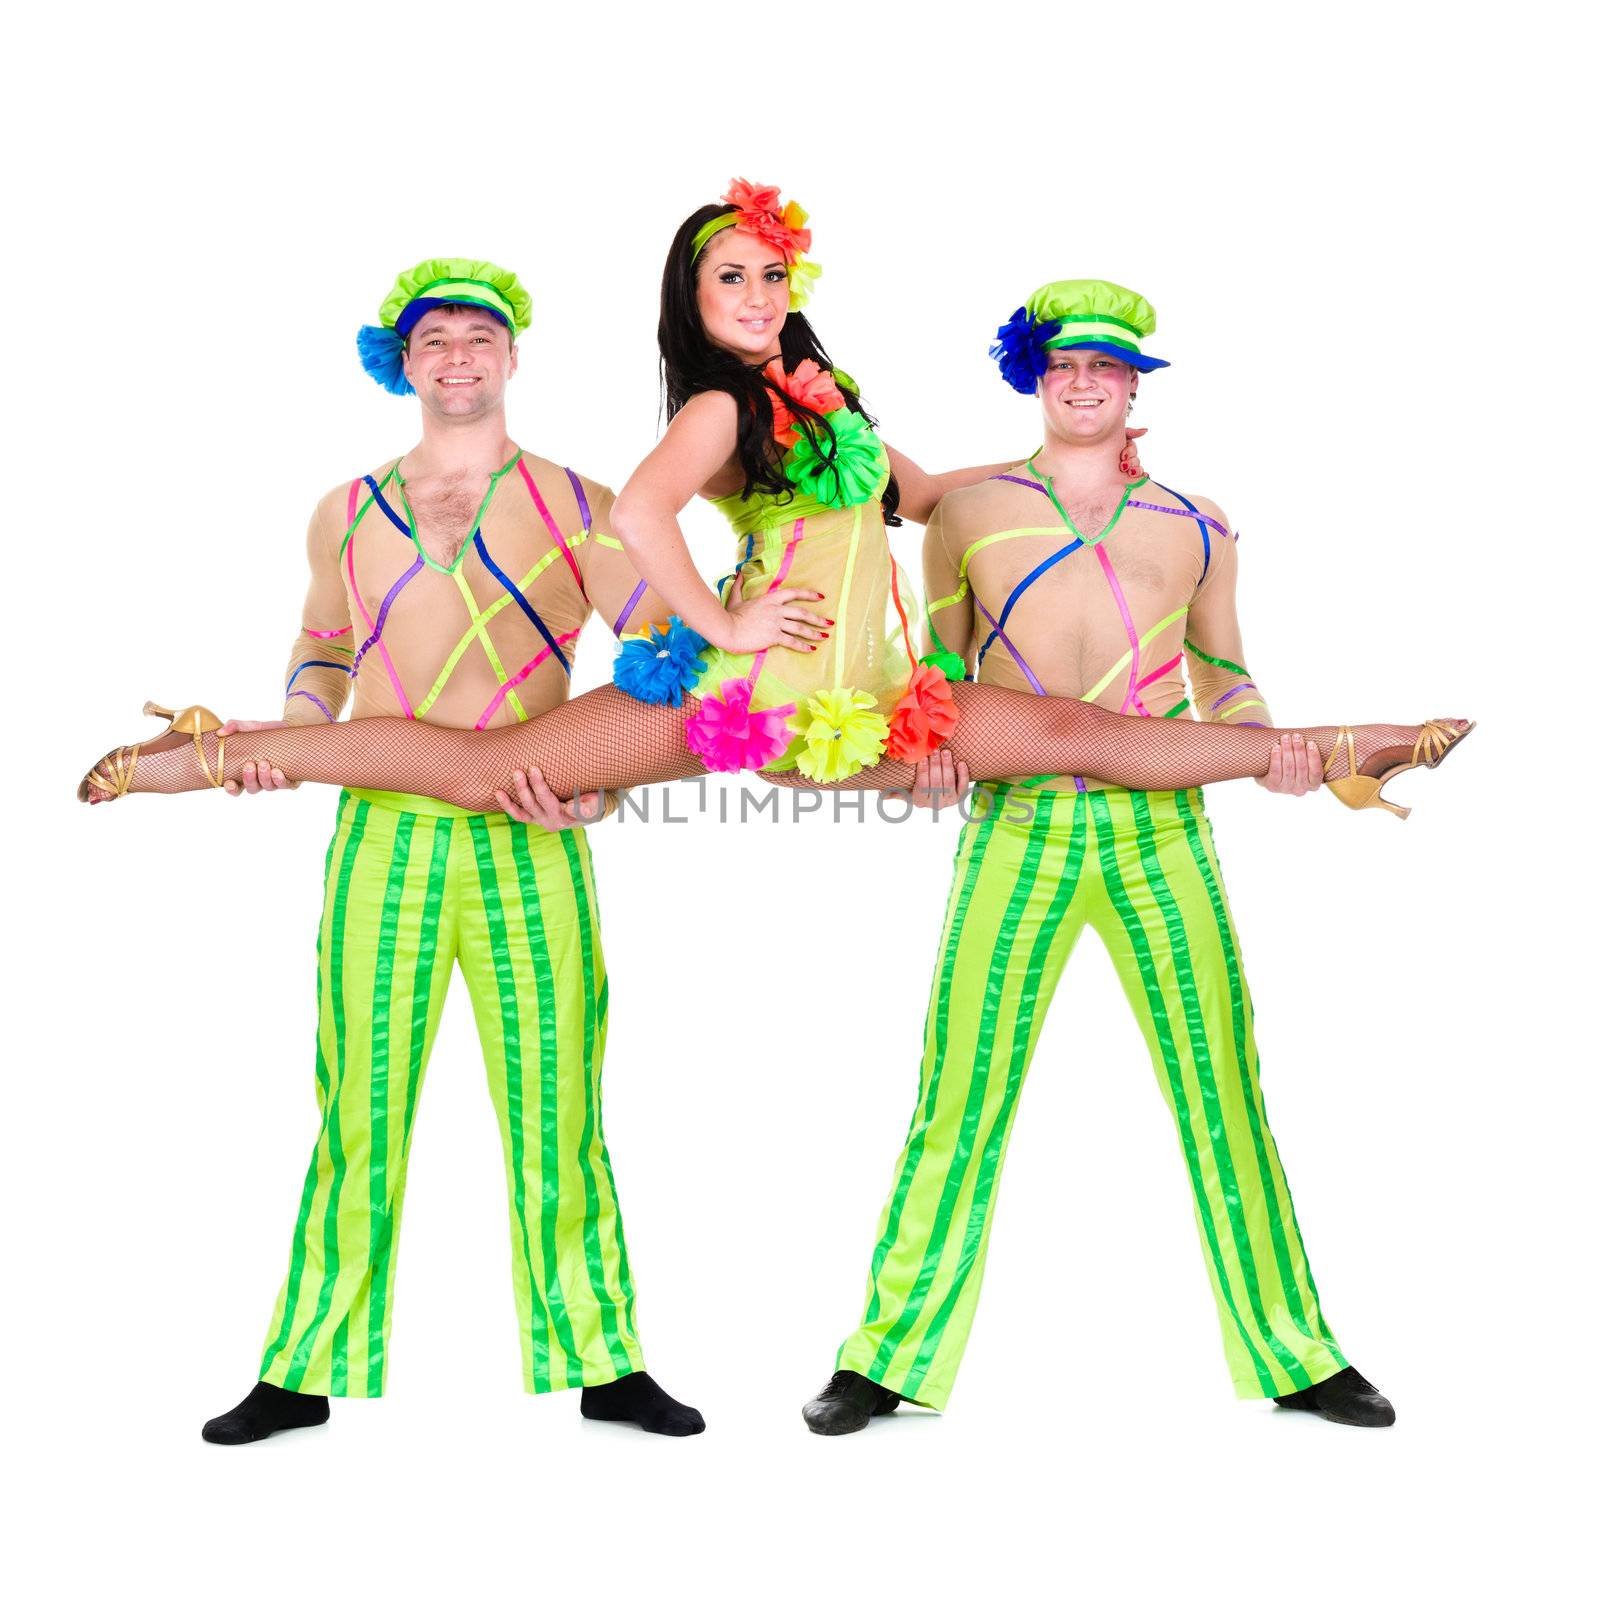 acrobat carnival dancers doing splits by stepanov